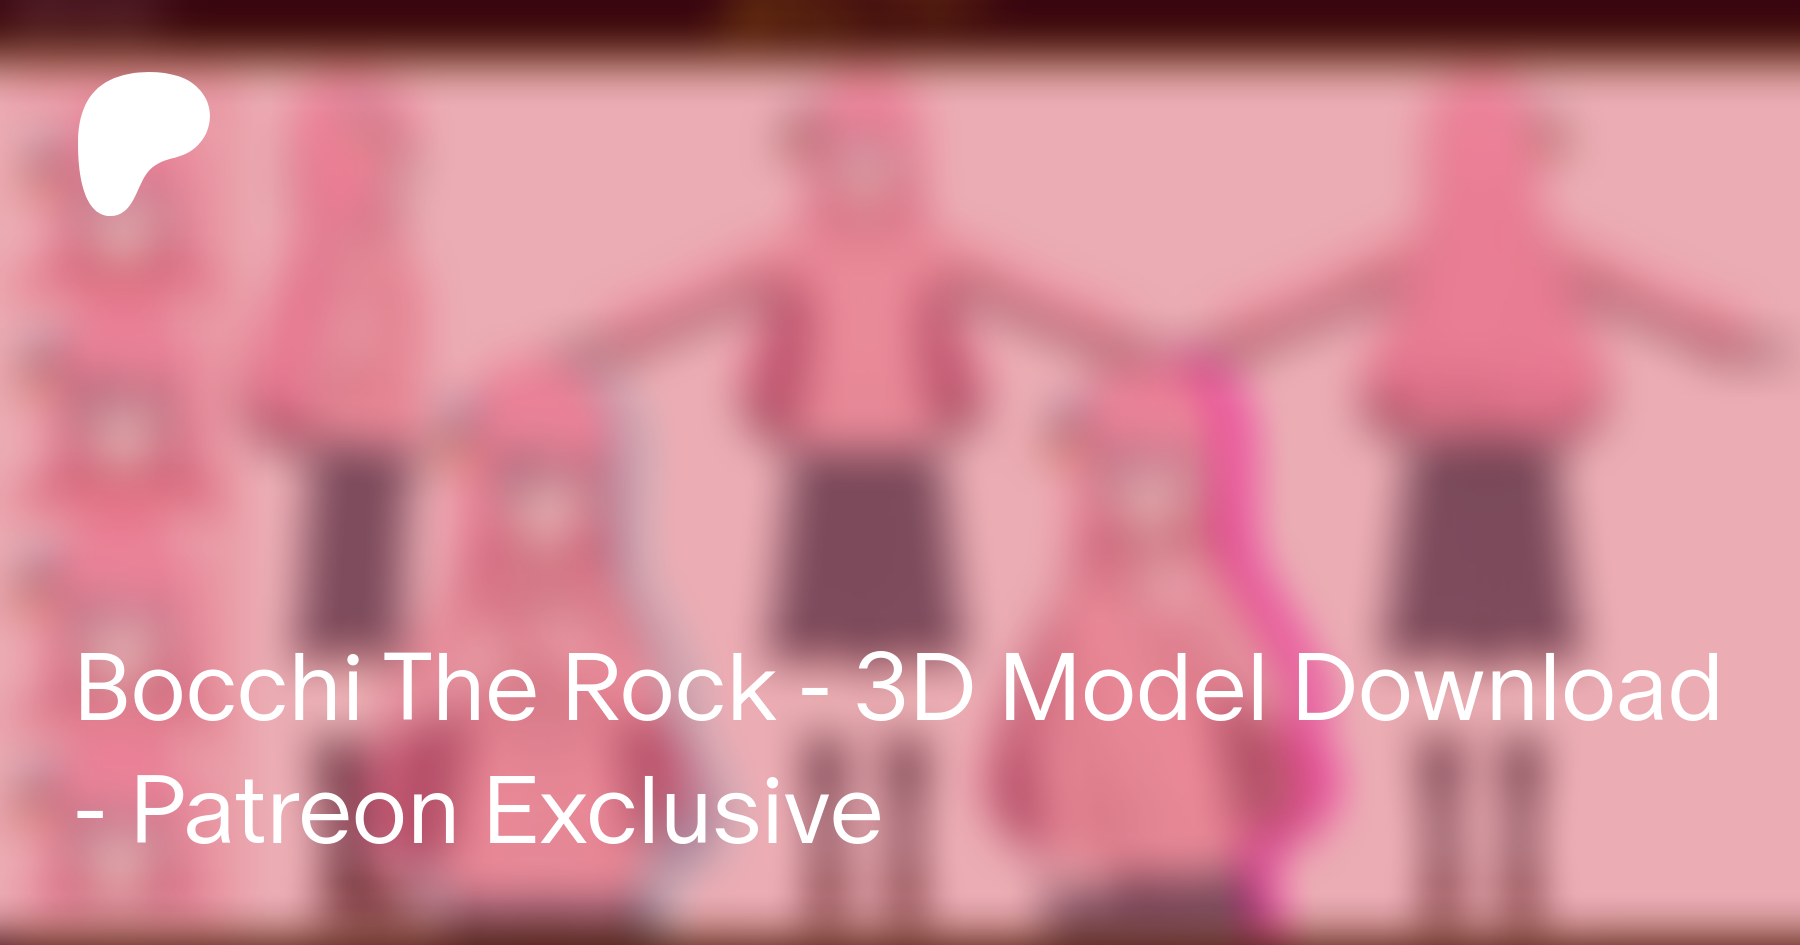 bocchi the rock - Download Free 3D model by copycatypo (@copycatypo)  [634c4da]